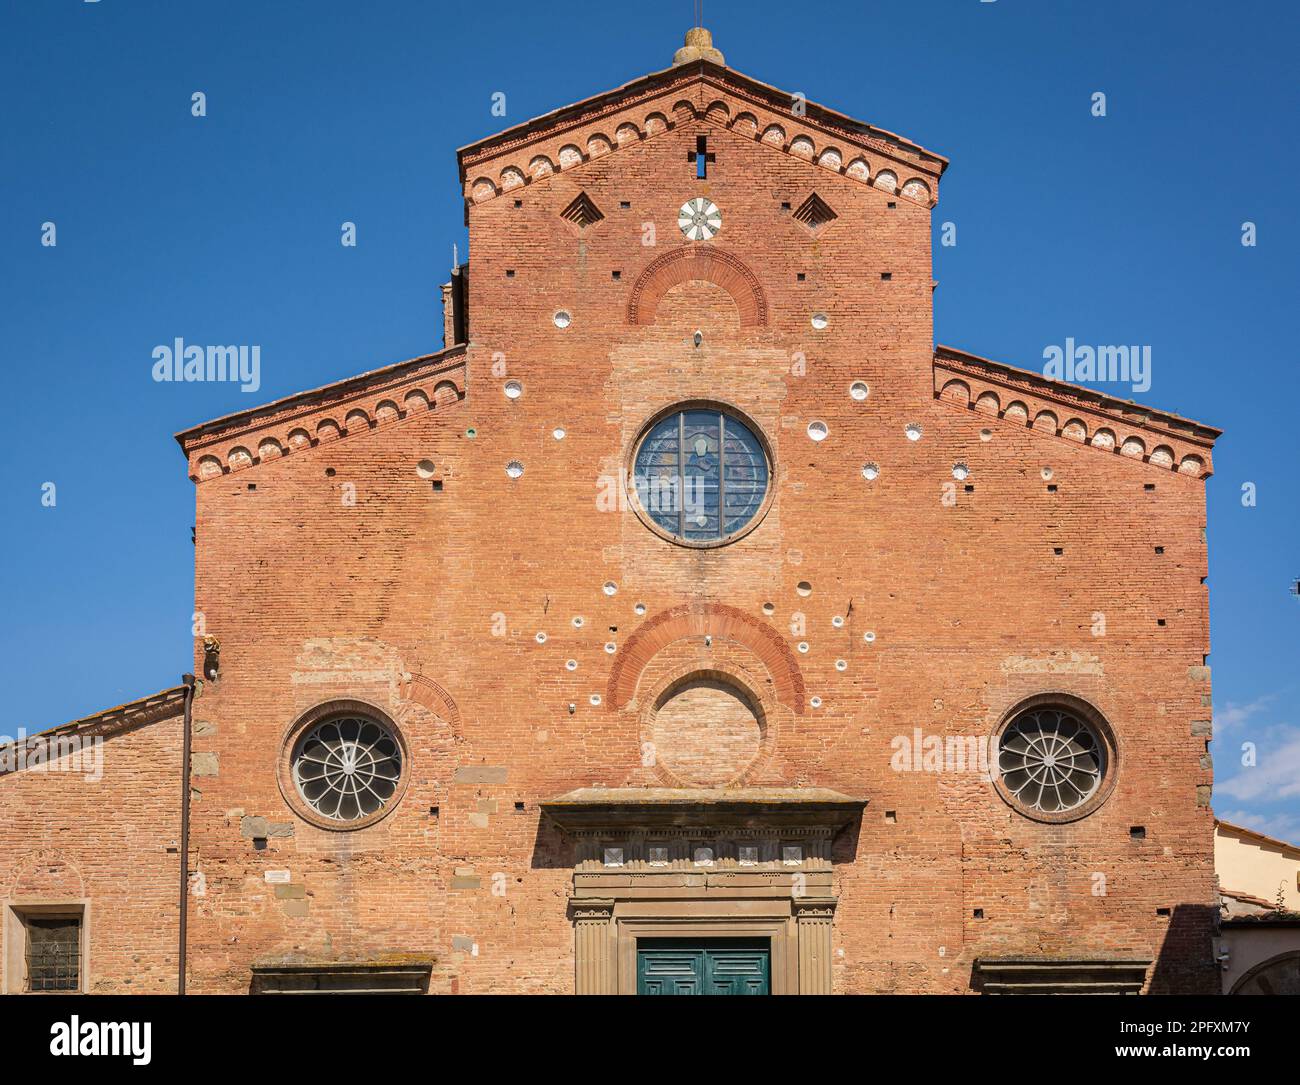 Facciata della Cattedrale di Santa Maria Assunta e San Genesio martire, costruita nel 12th ° secolo, San Miniato, regione toscana, Italia Foto Stock